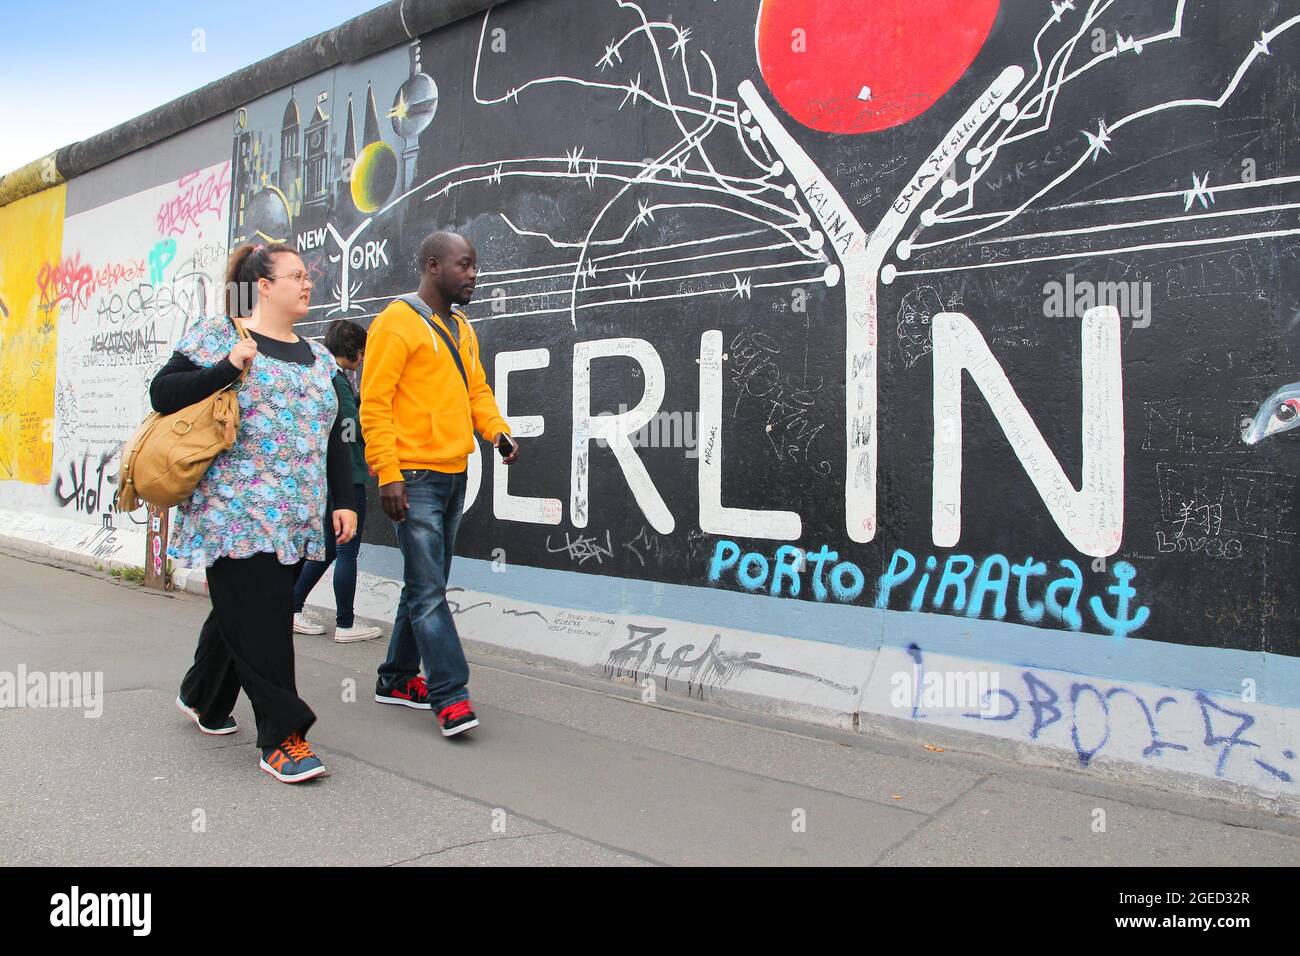 BERLIN, ALLEMAGNE - 26 AOÛT 2014 : les gens marchent sur un trottoir public le long du mur de Berlin (Berliner Mauer). La frontière emblématique du rideau de fer a divisé Berlin en Banque D'Images